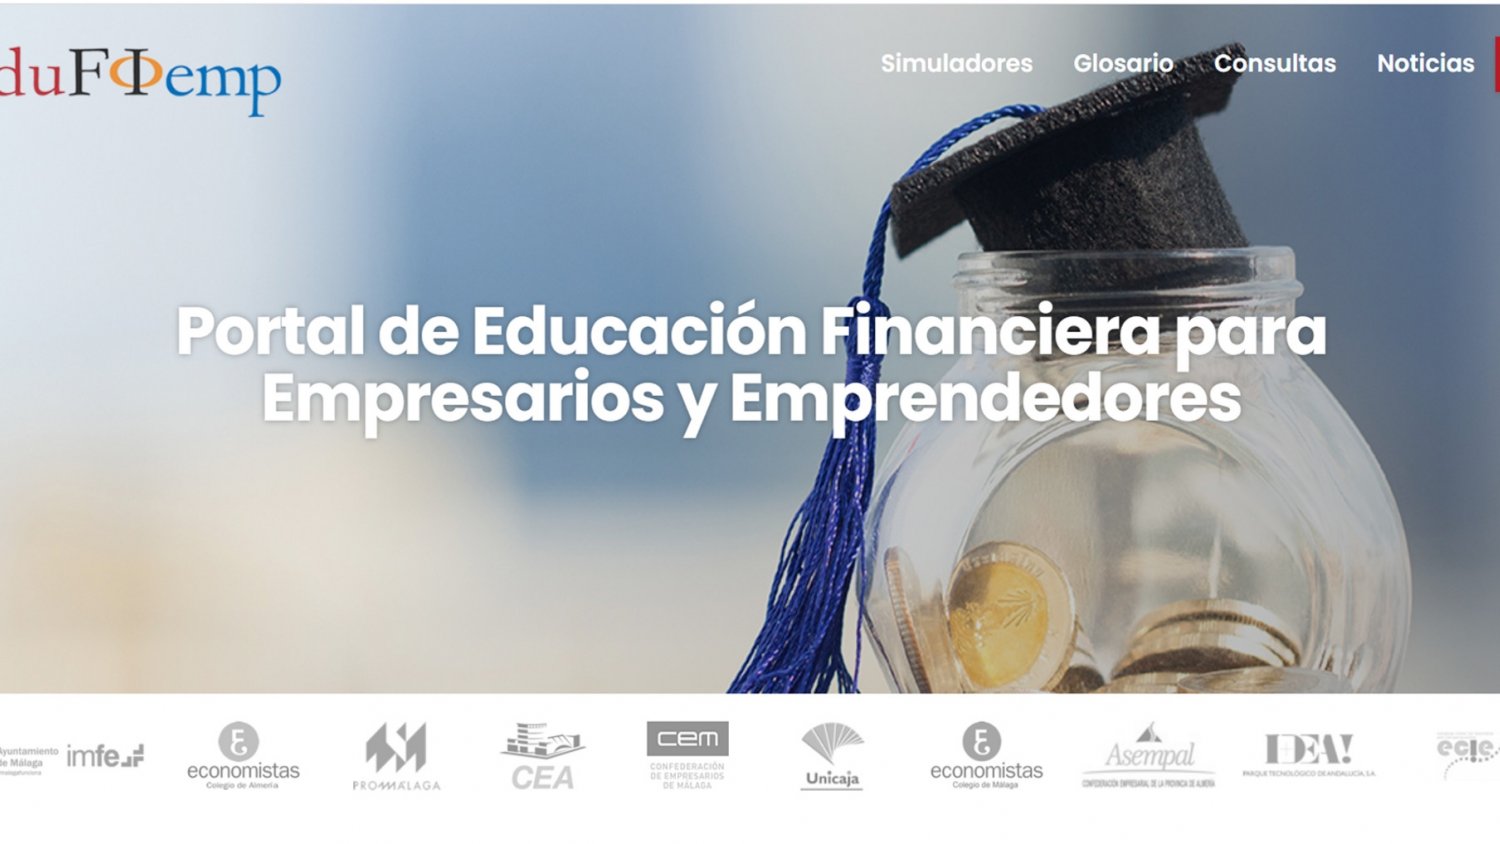 El Proyecto Edufinet de Unicaja estrena nueva web para su portal de educación financiera